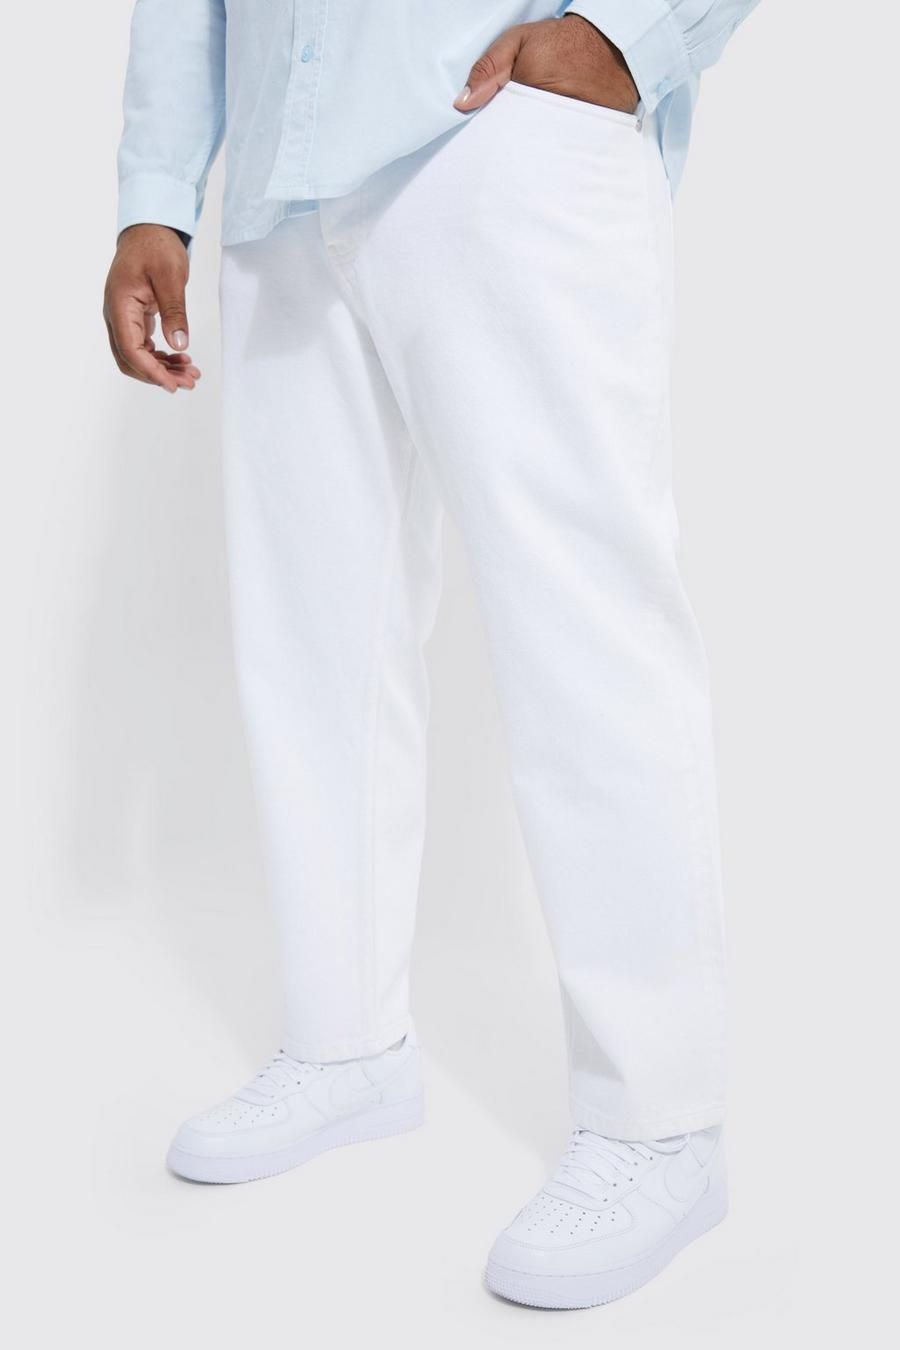 Grande taille - Jean fuselé rigide, White blanc